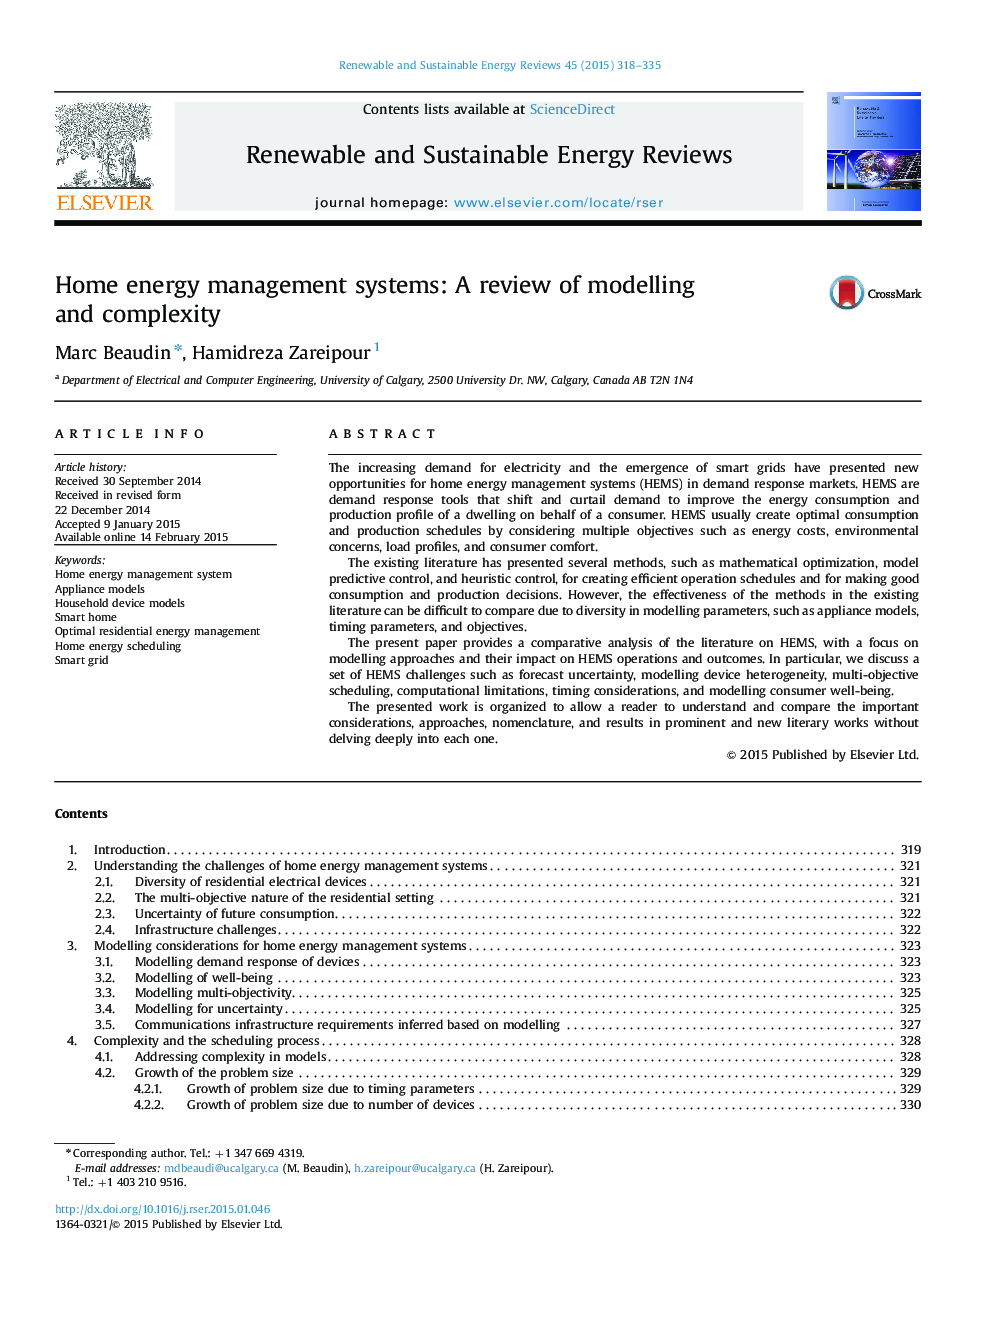 سیستم های مدیریت انرژی خانه: بررسی مدل سازی و پیچیدگی 